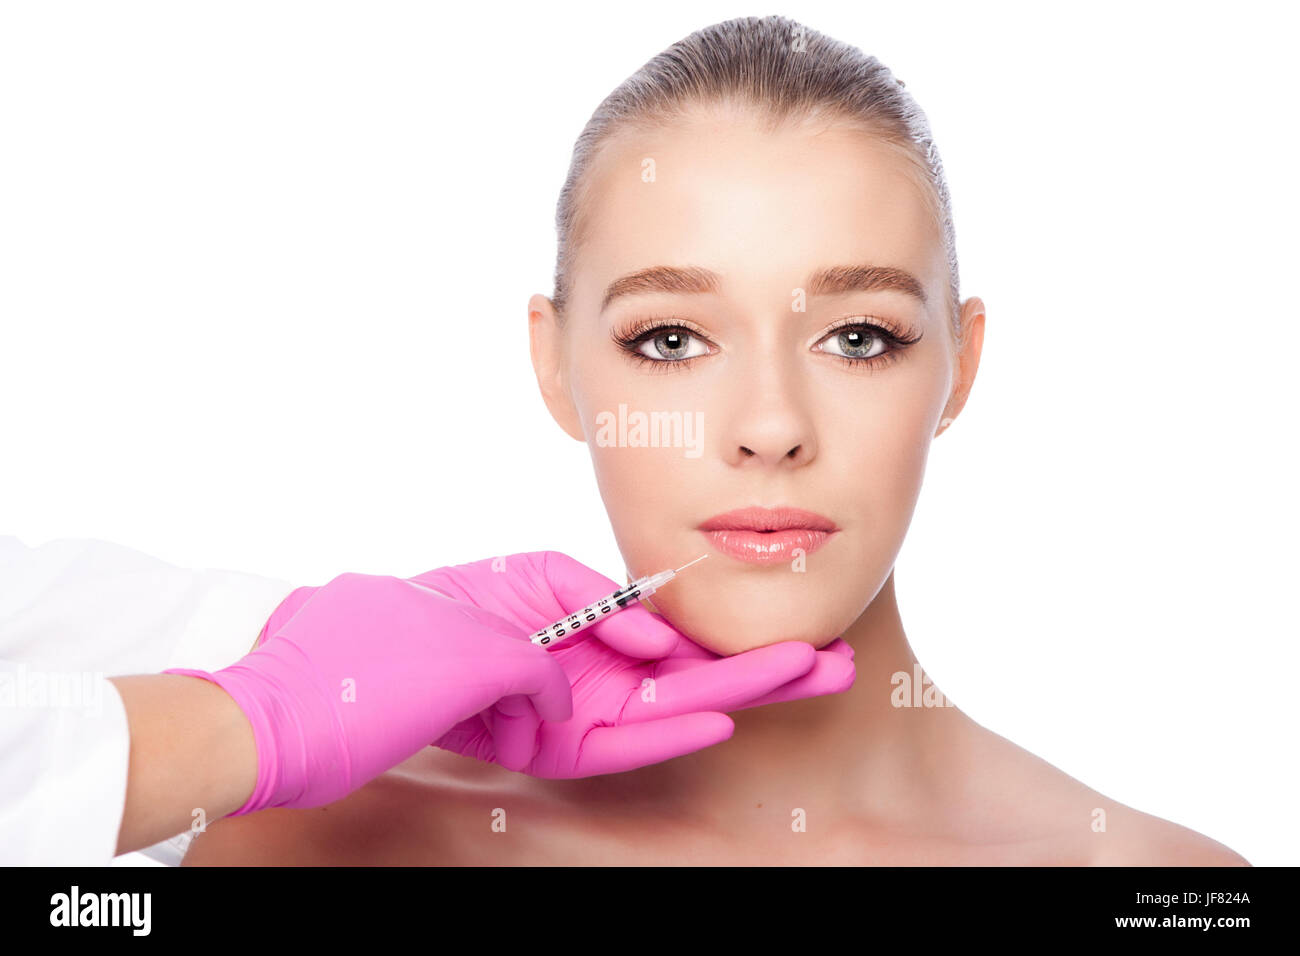 Lip Injection facial spa beauty treatment Stock Photo